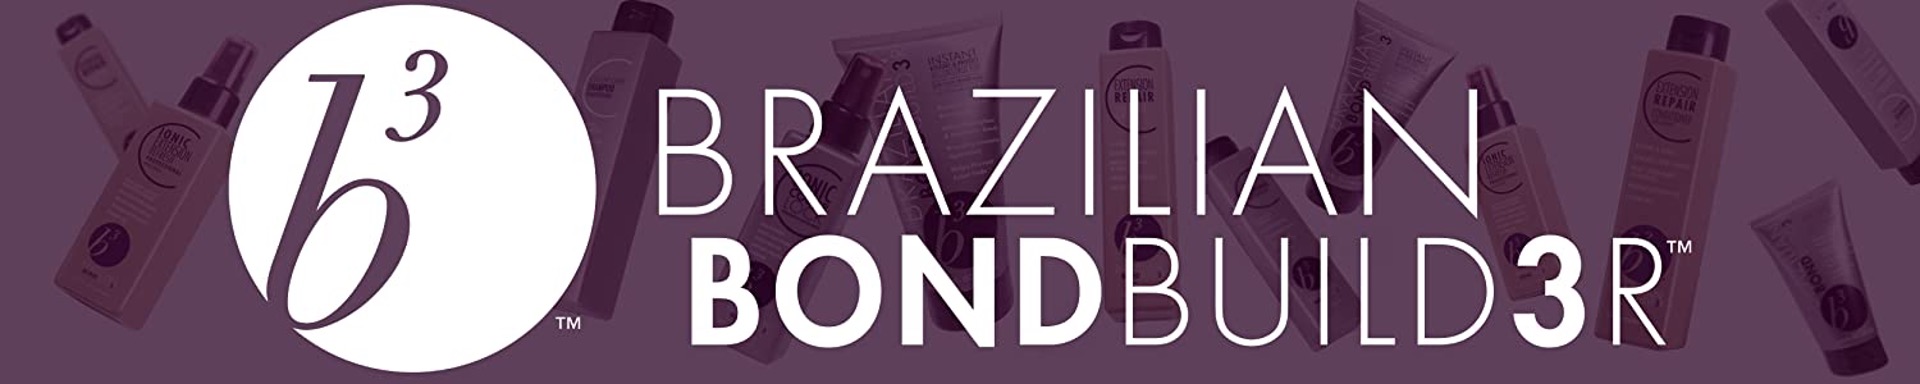 Brazilian Bondbuild3r